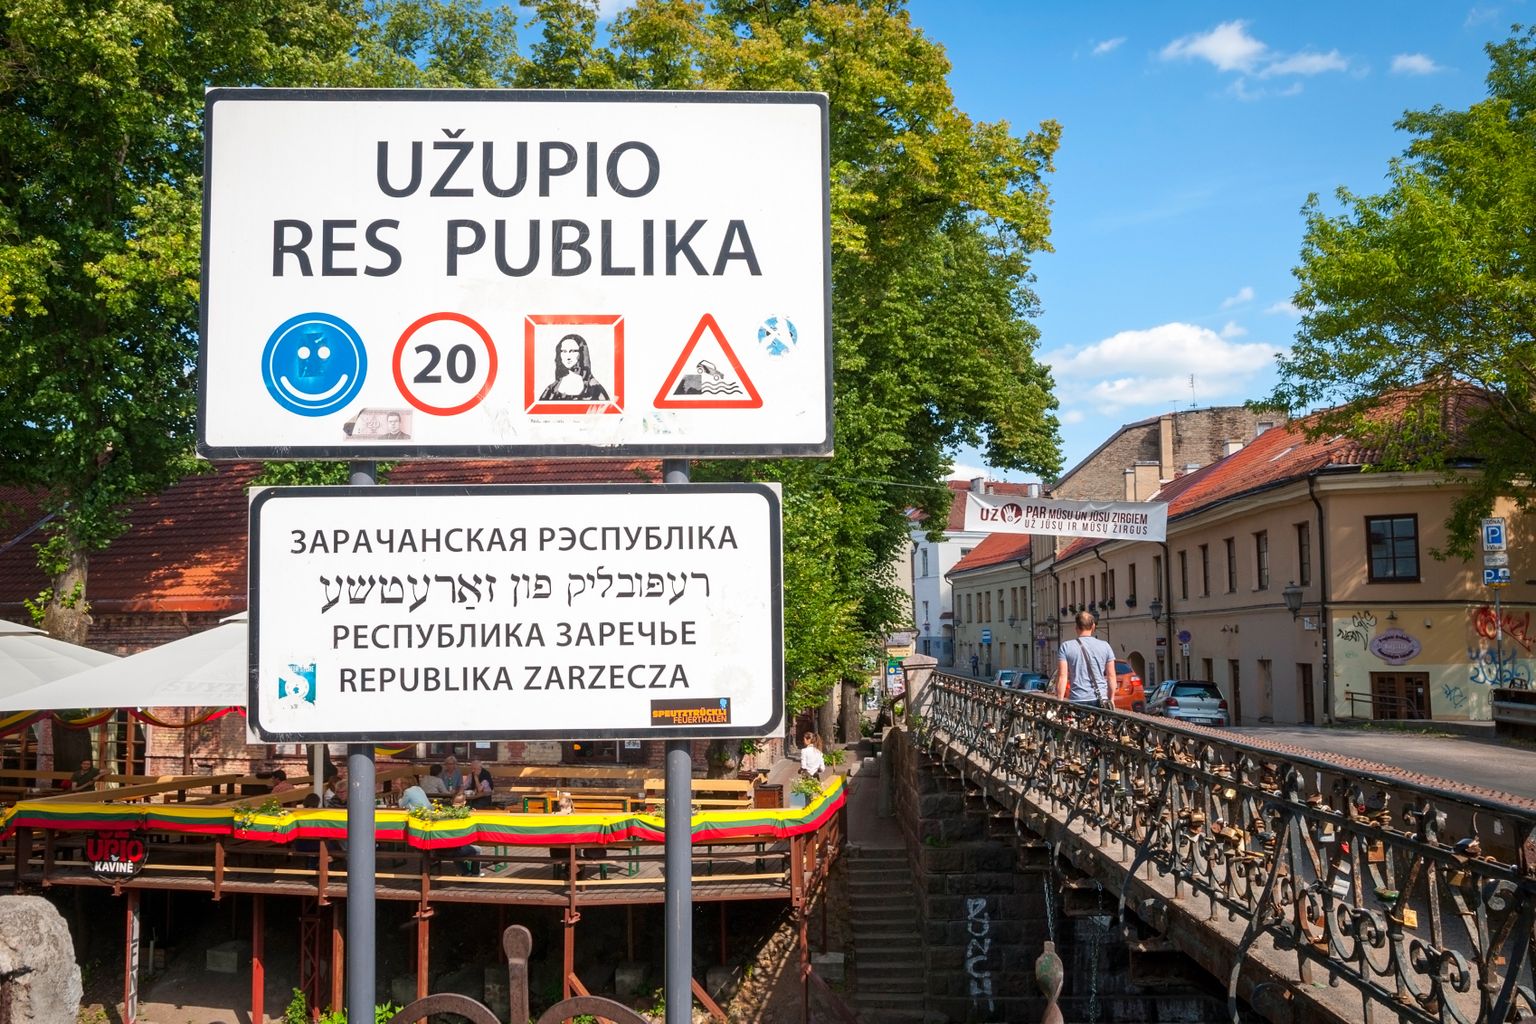 ÜLETATE PIIRI: Silt Vilniuse kesklinnas teavitab, et ületate Užupise Vabariigi riigipiiri. Riigi sümboliks on auguga peopesa. Auk peopesal on nagu hoiatus, et Užupise elukorraldus pole sobiv kõigi jaoks.